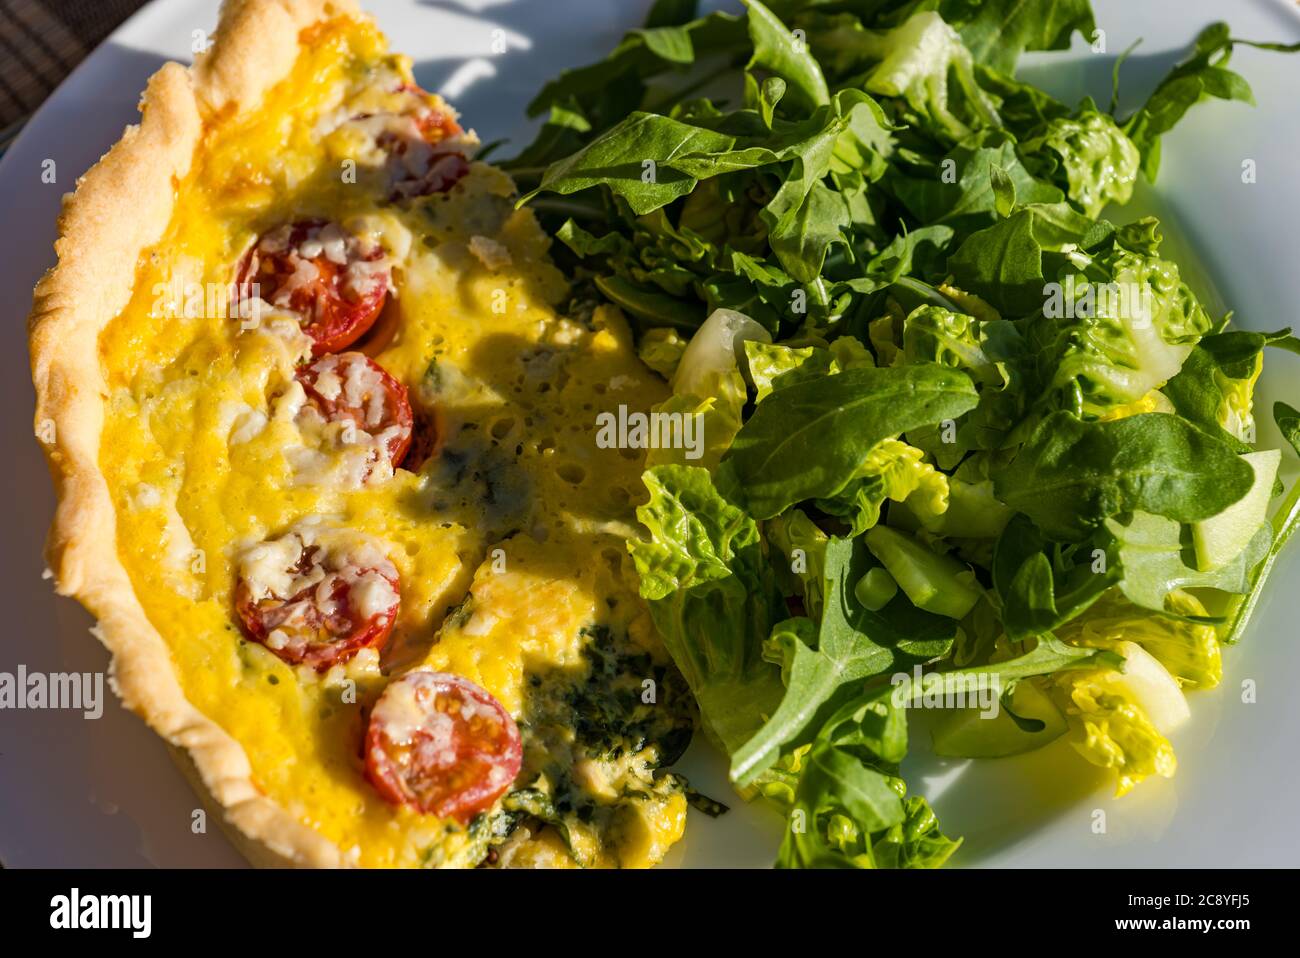 Table extérieure avec repas d'été de tomate, d'épinards et d'oeuf quiche Lorraine et salade verte Banque D'Images